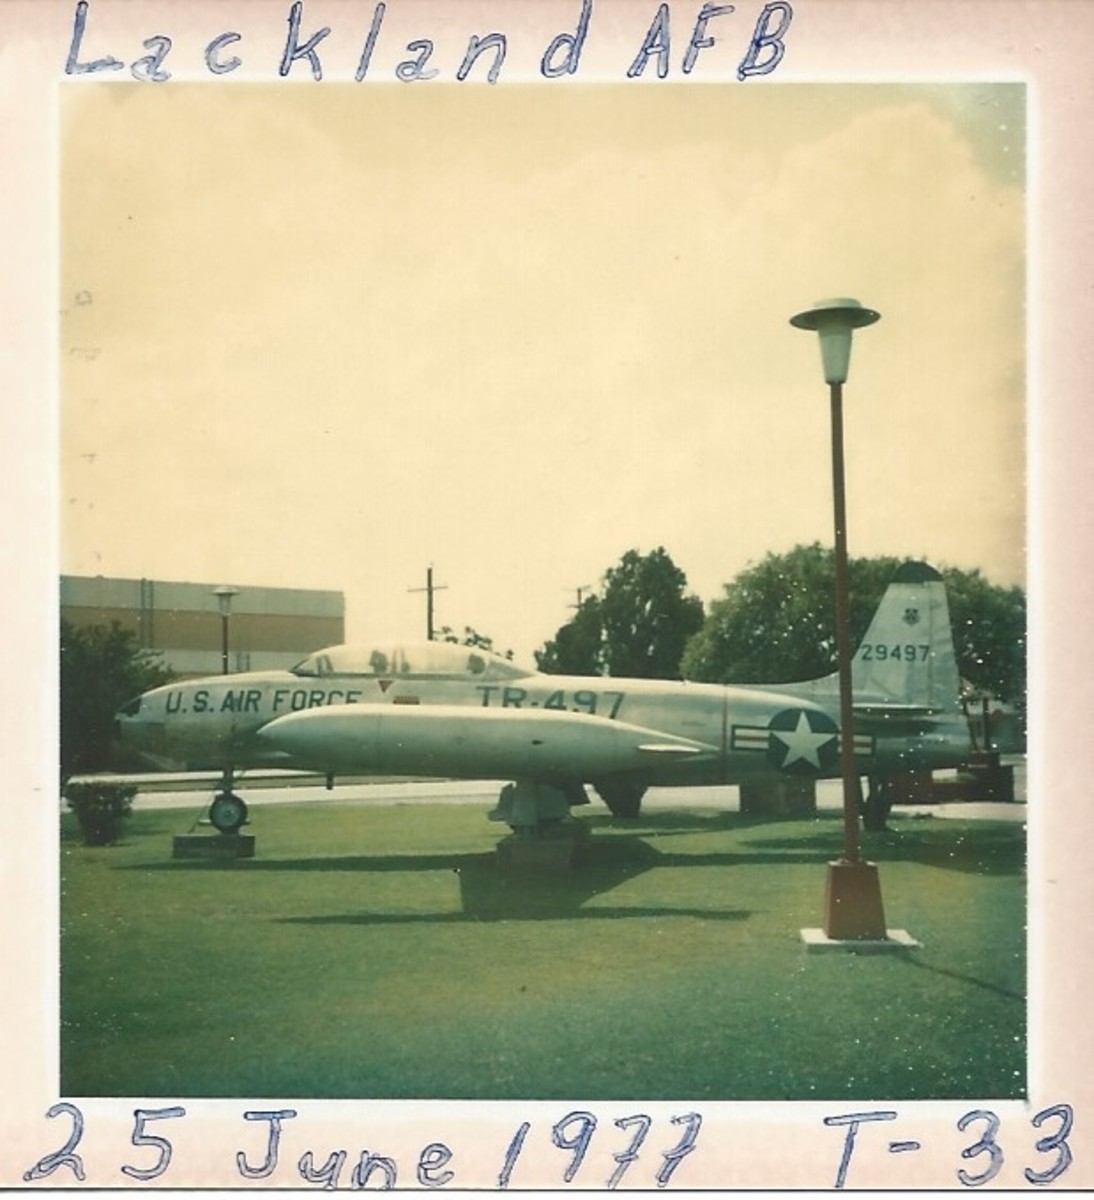 A T-33 at Lackland AFB, TX, 1977.